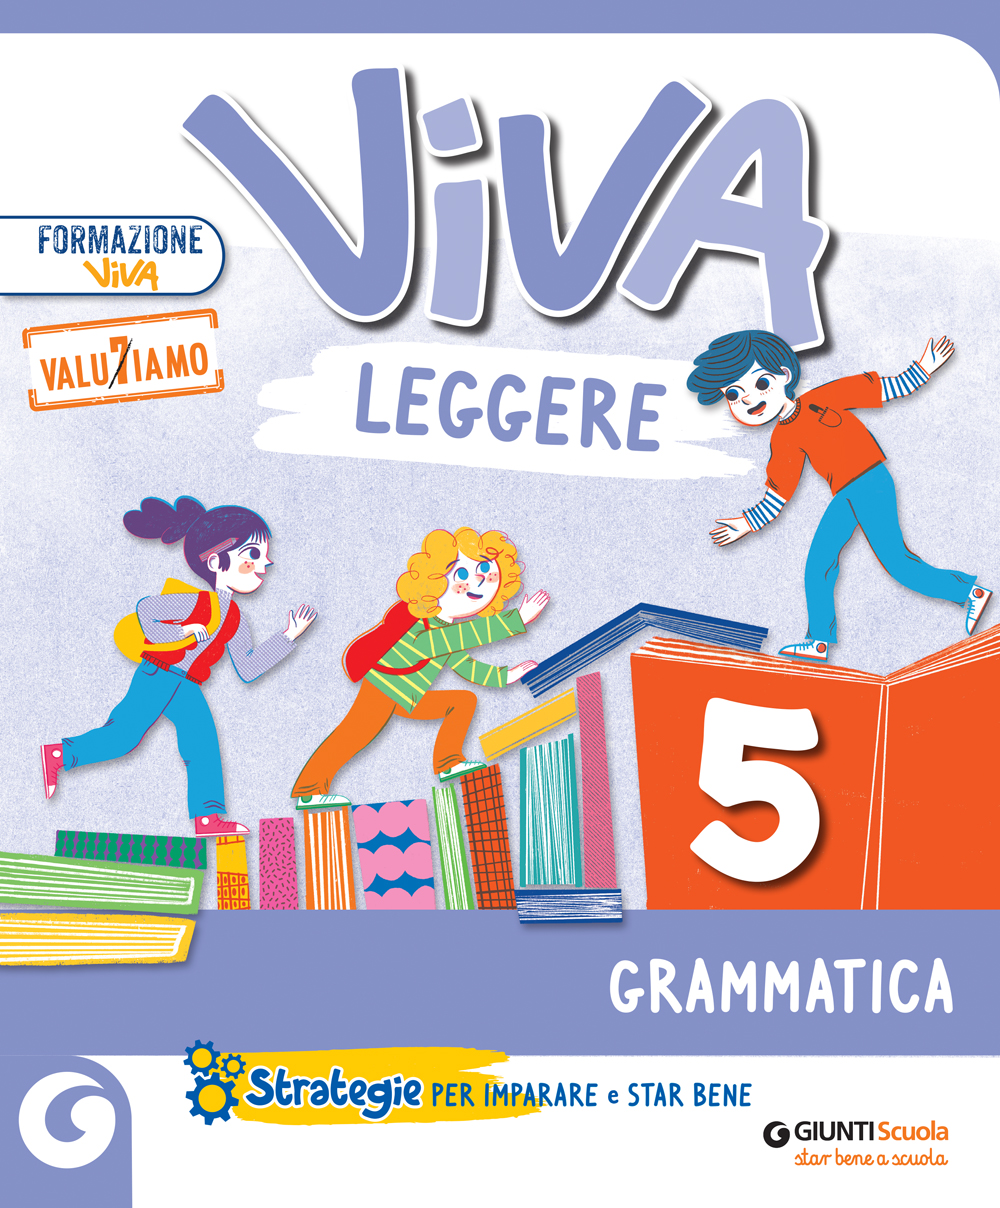 VIVA LEGGERE - cl 5 Grammatica | Giunti Scuola